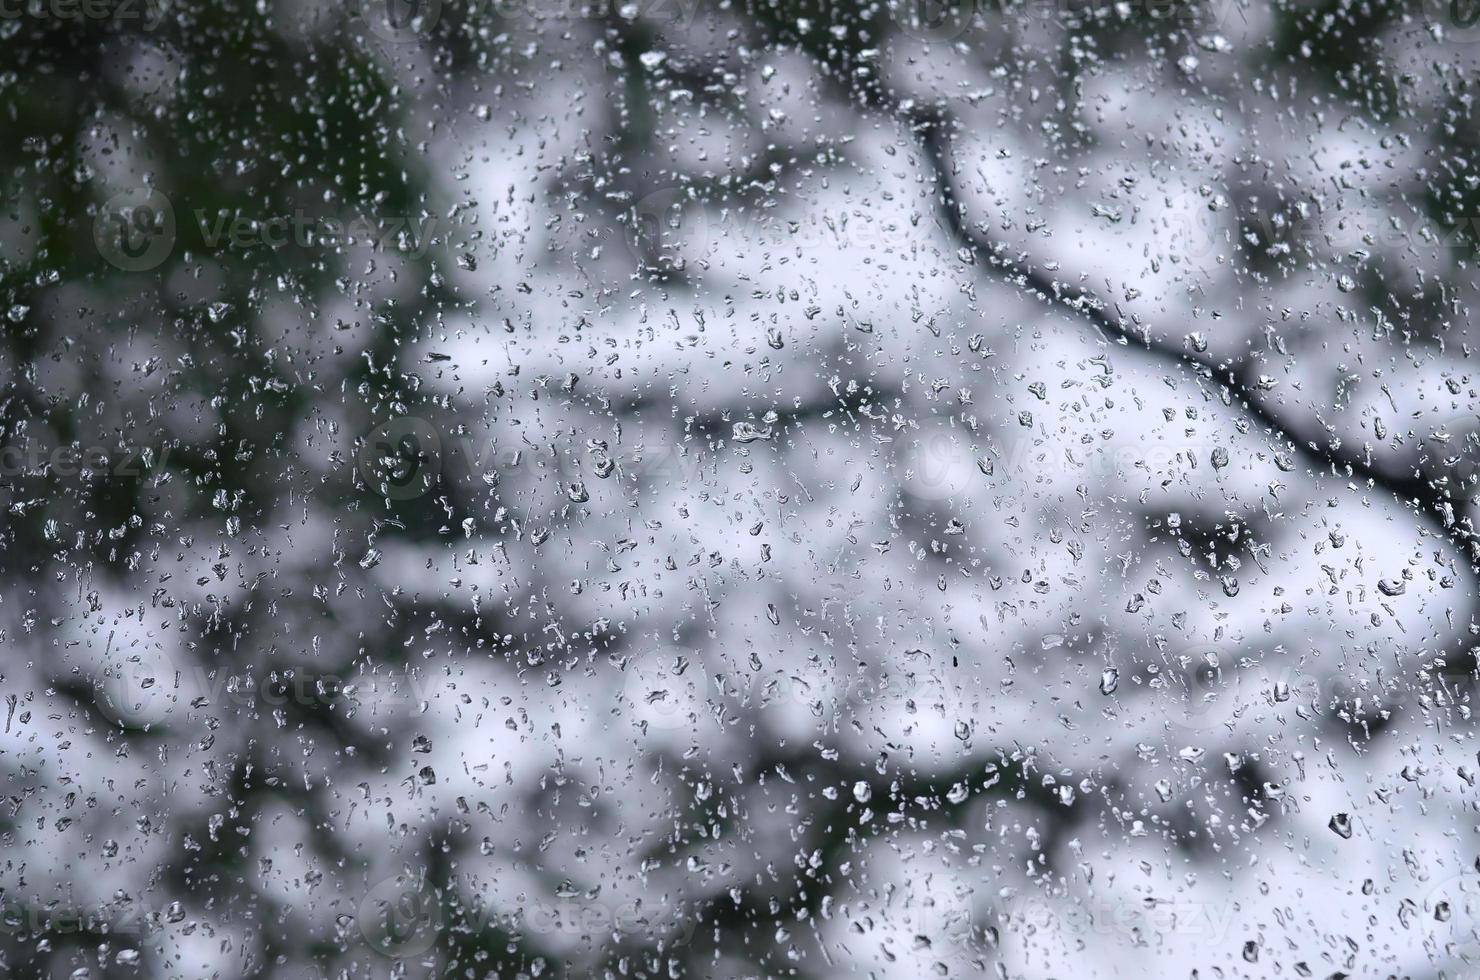 une photo de gouttes de pluie sur la vitre avec une vue floue des arbres verts en fleurs. image abstraite montrant des conditions météorologiques nuageuses et pluvieuses